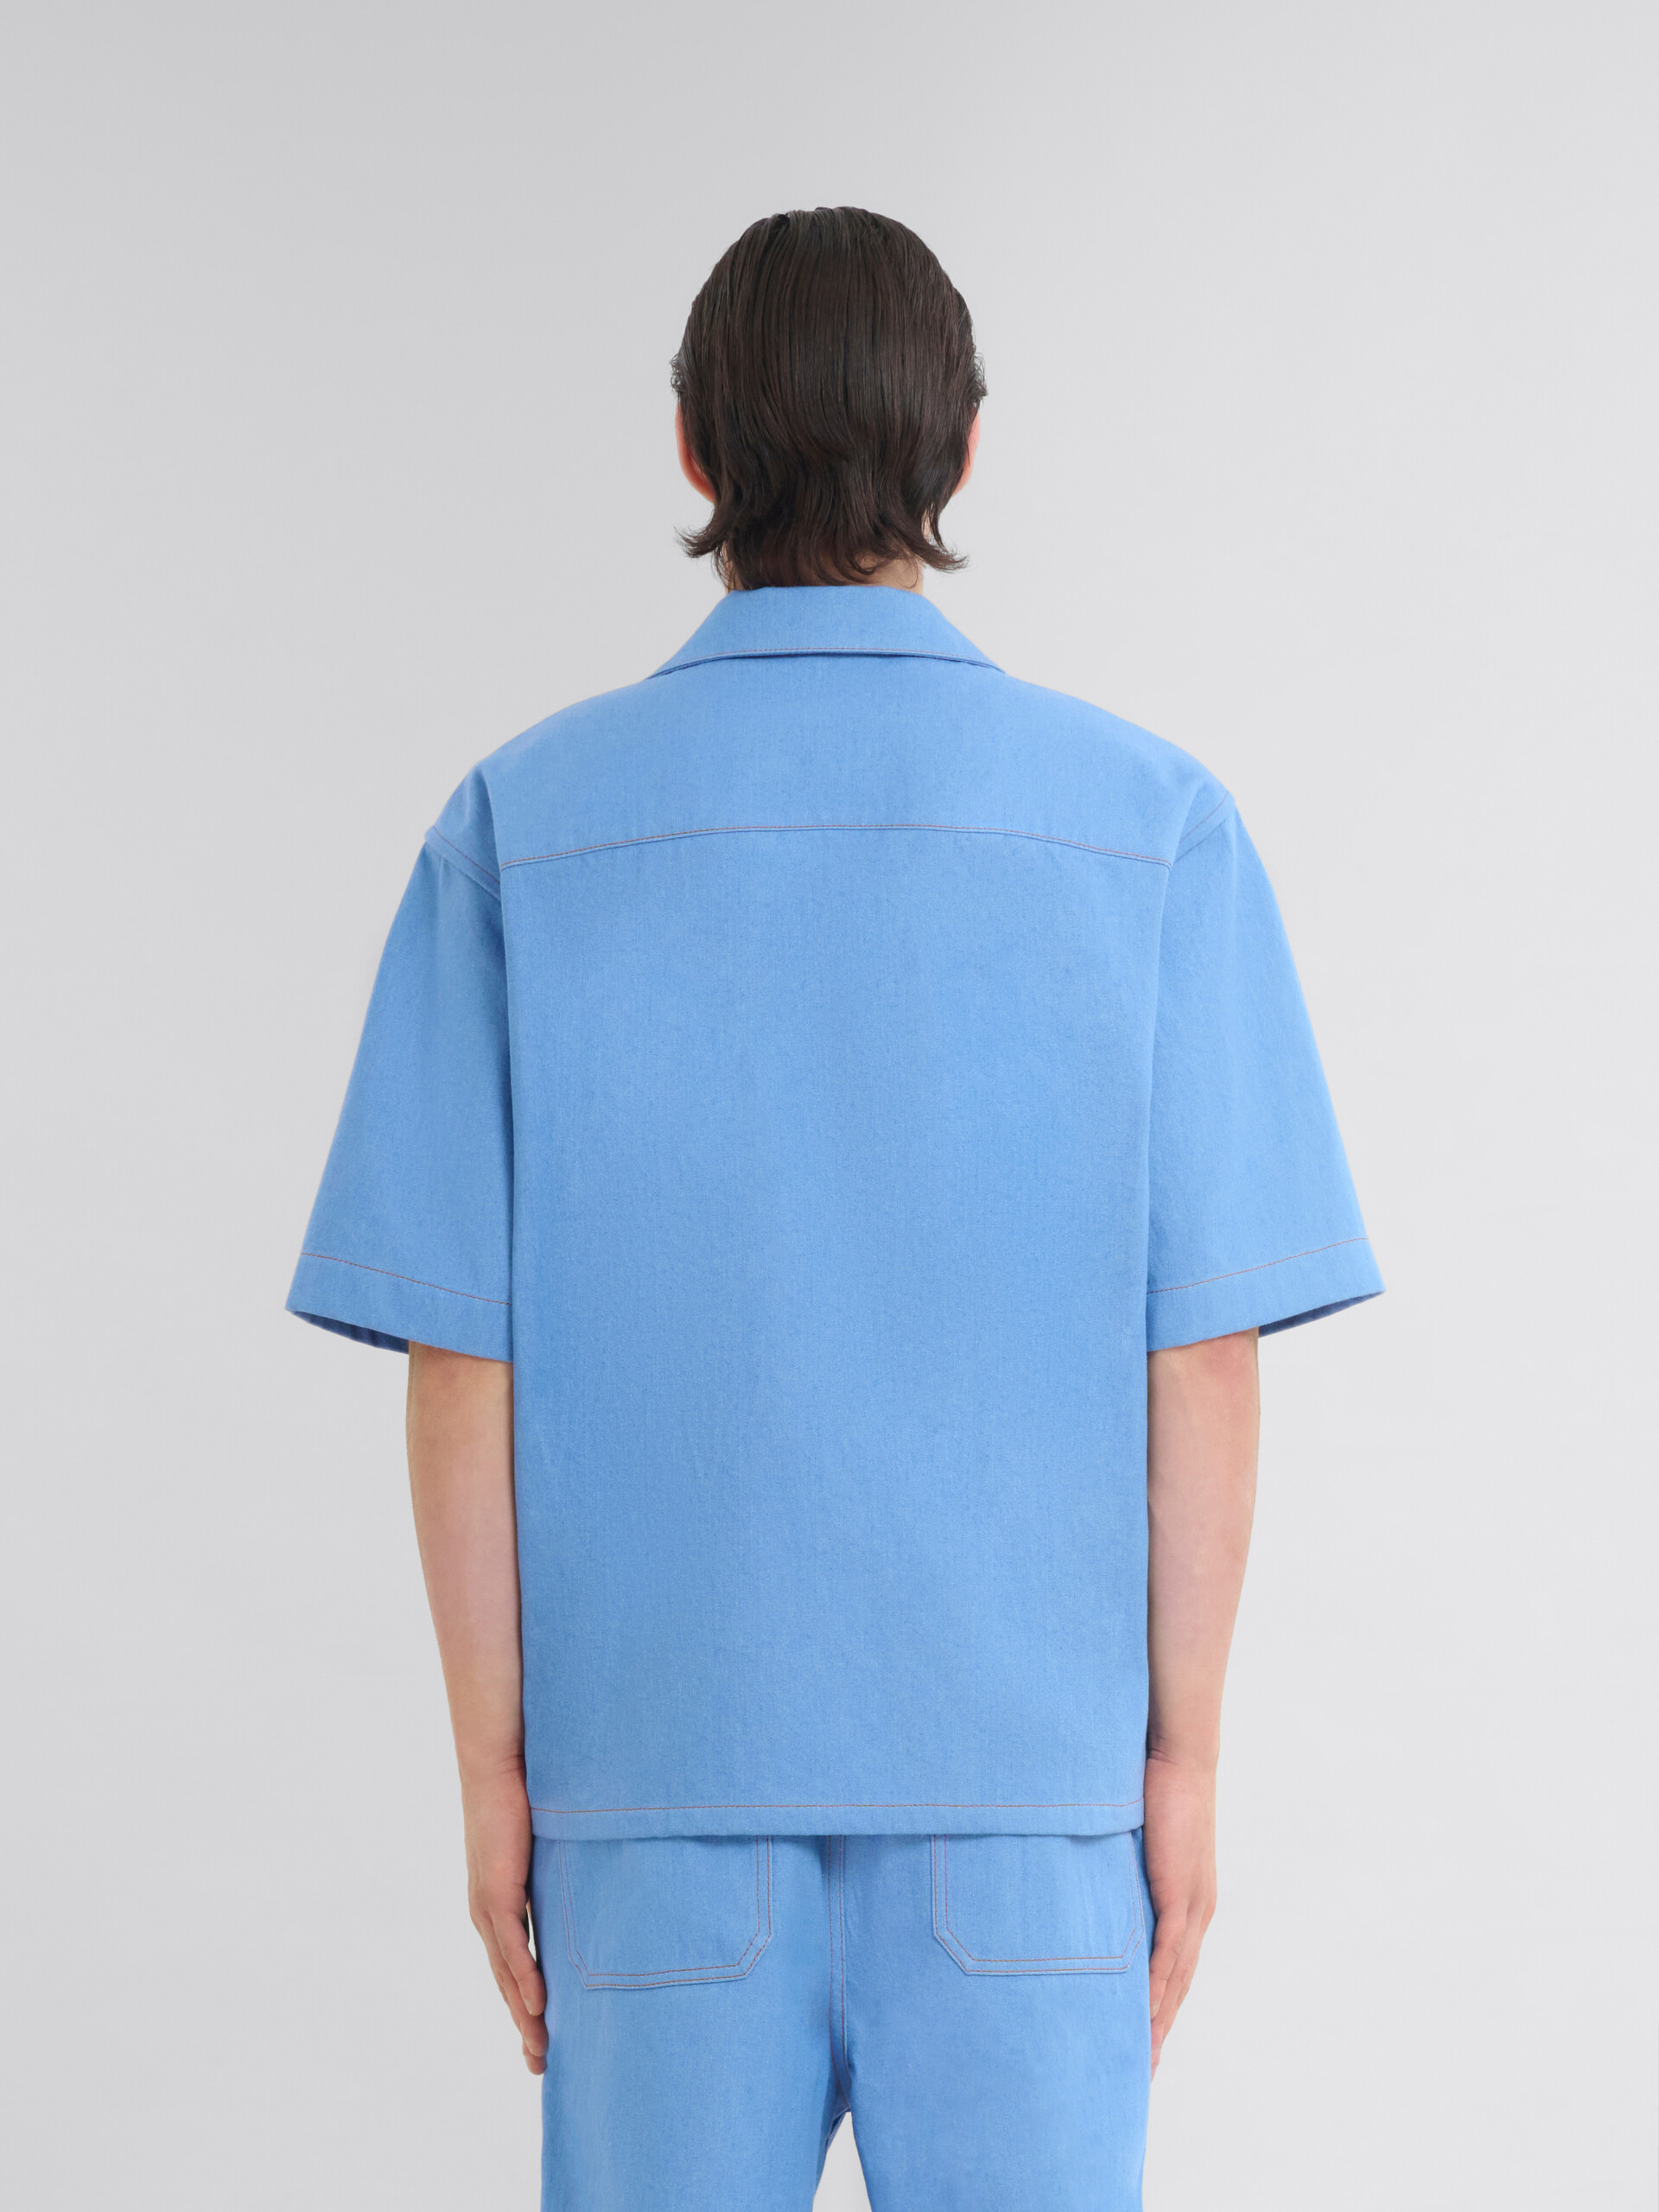 마르니 멘딩 로고 장식 블루 데님 볼링 셔츠 - 셔츠 - Image 3